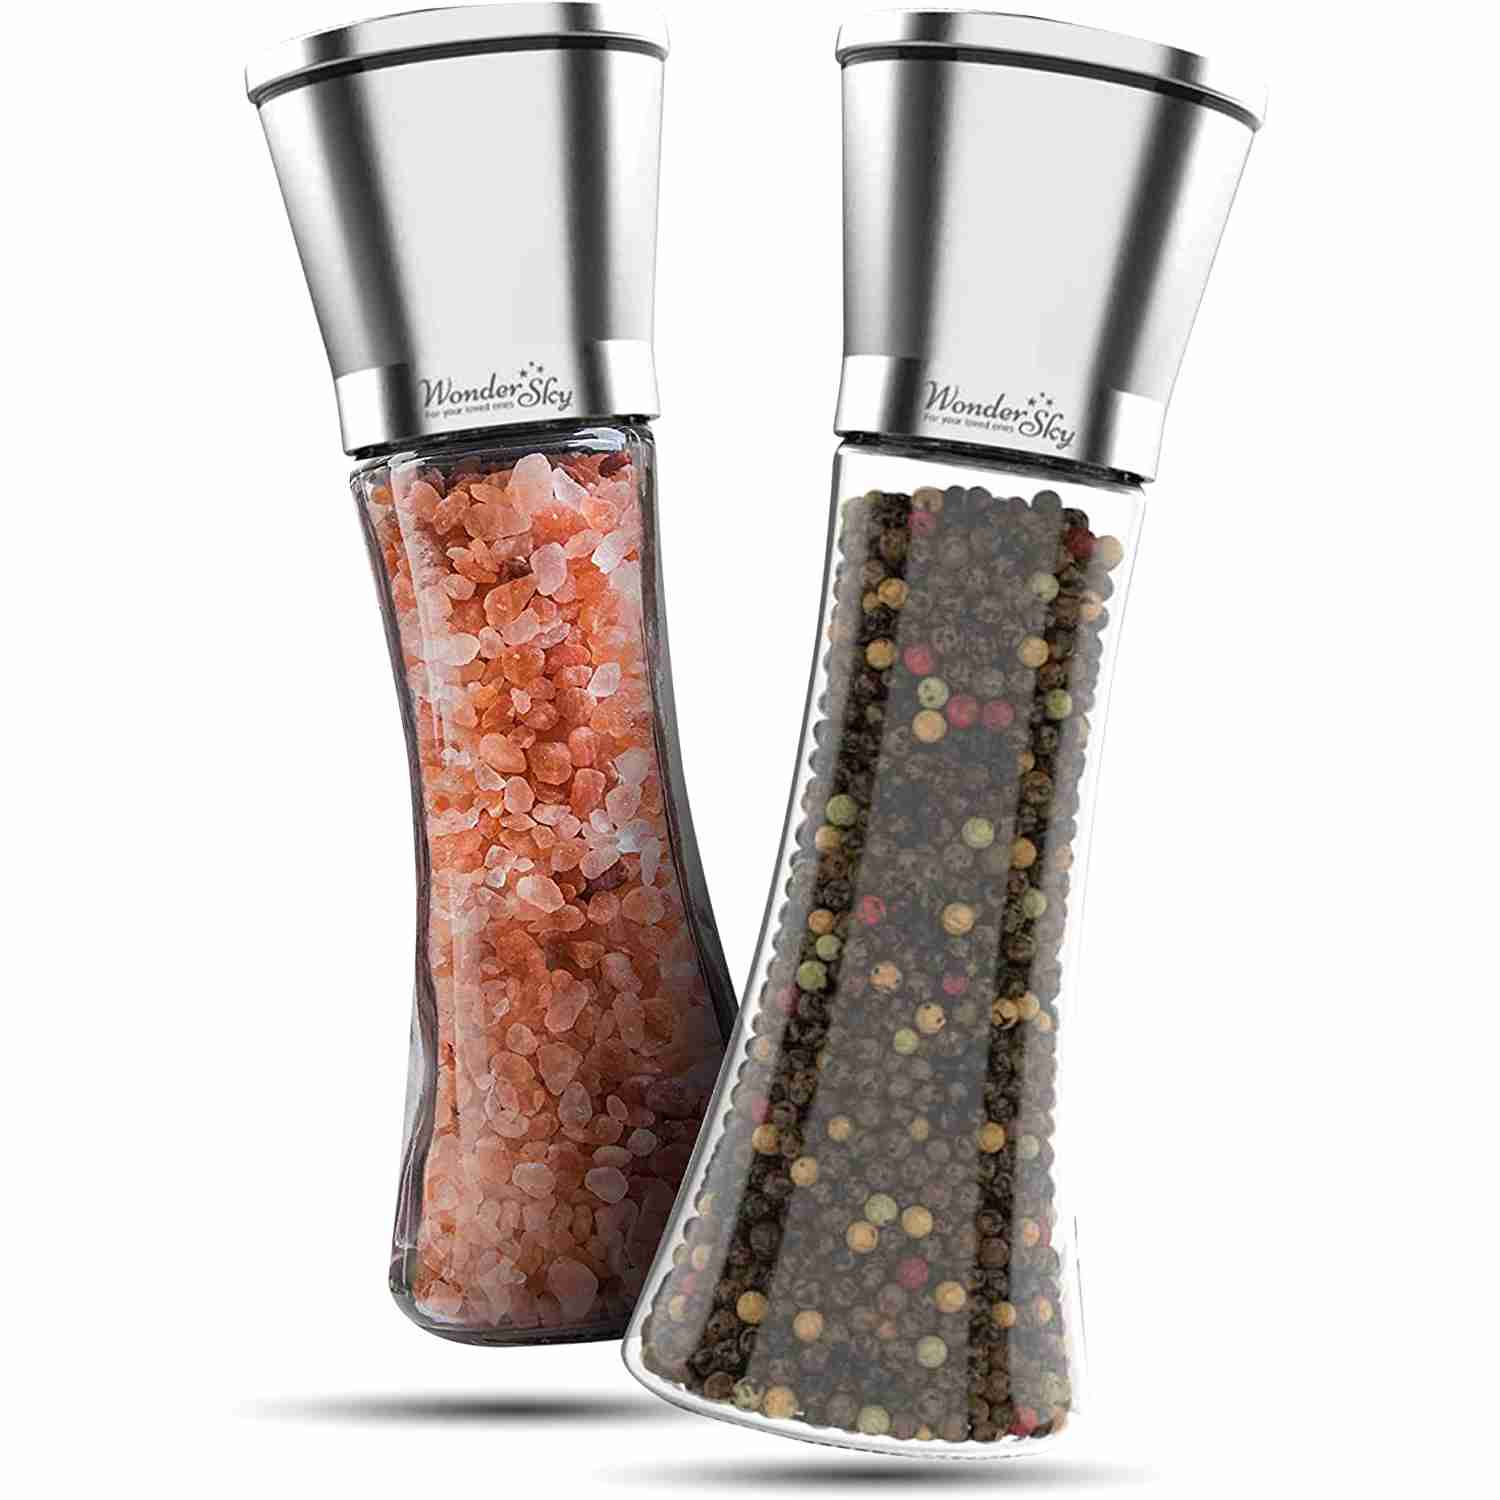 salt-and-pepper-grinder-set with cash back rebate